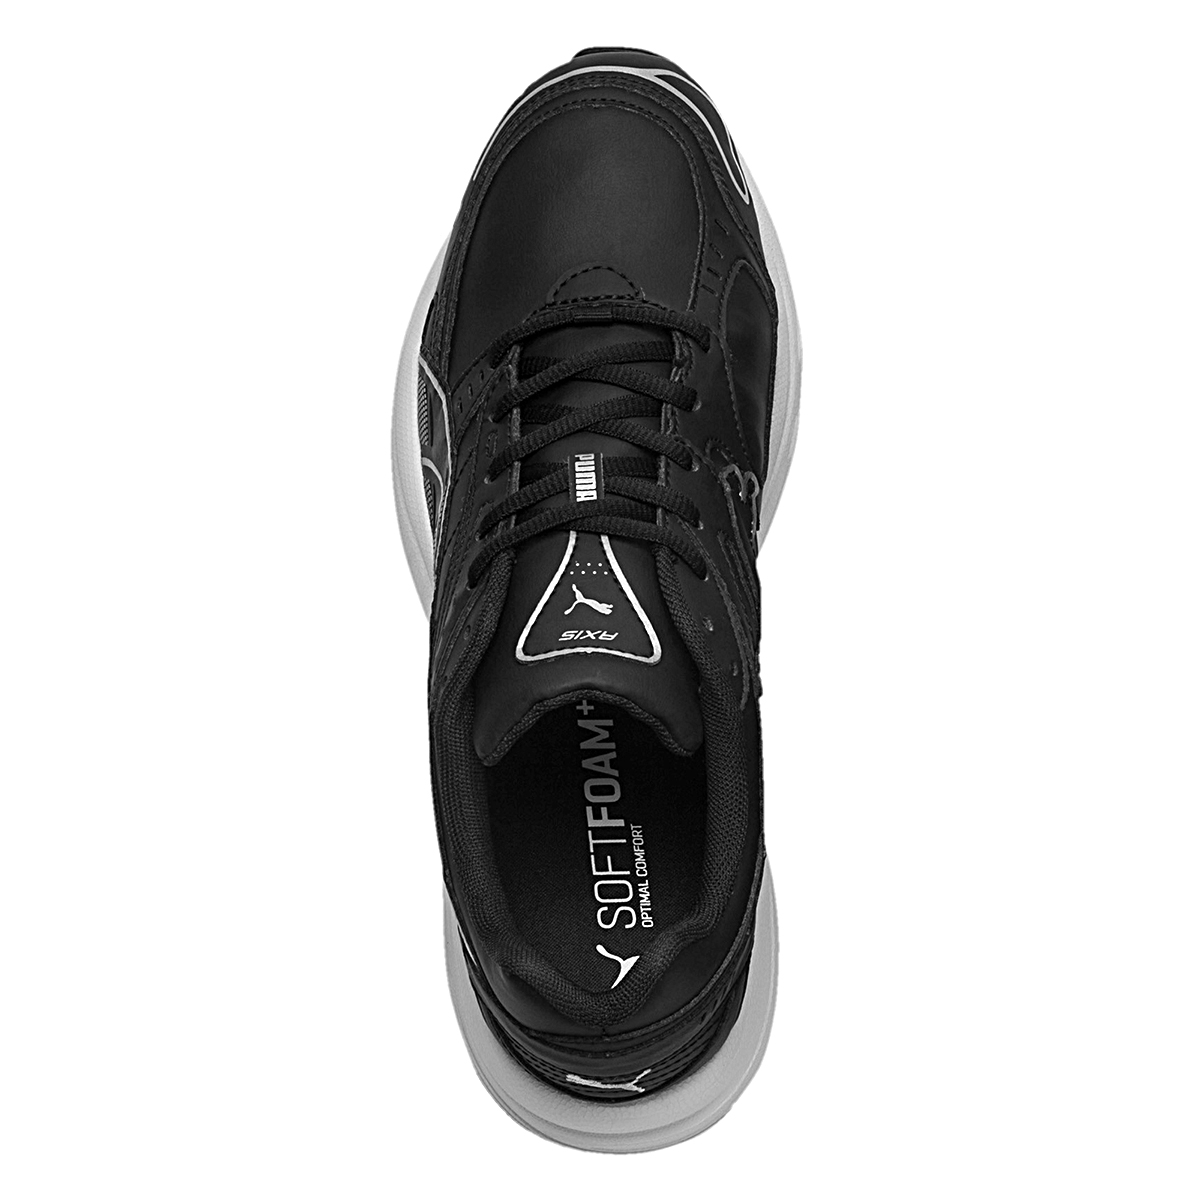 Puma Axis SL Herren Sneaker Schuhe schwarz 368466 02